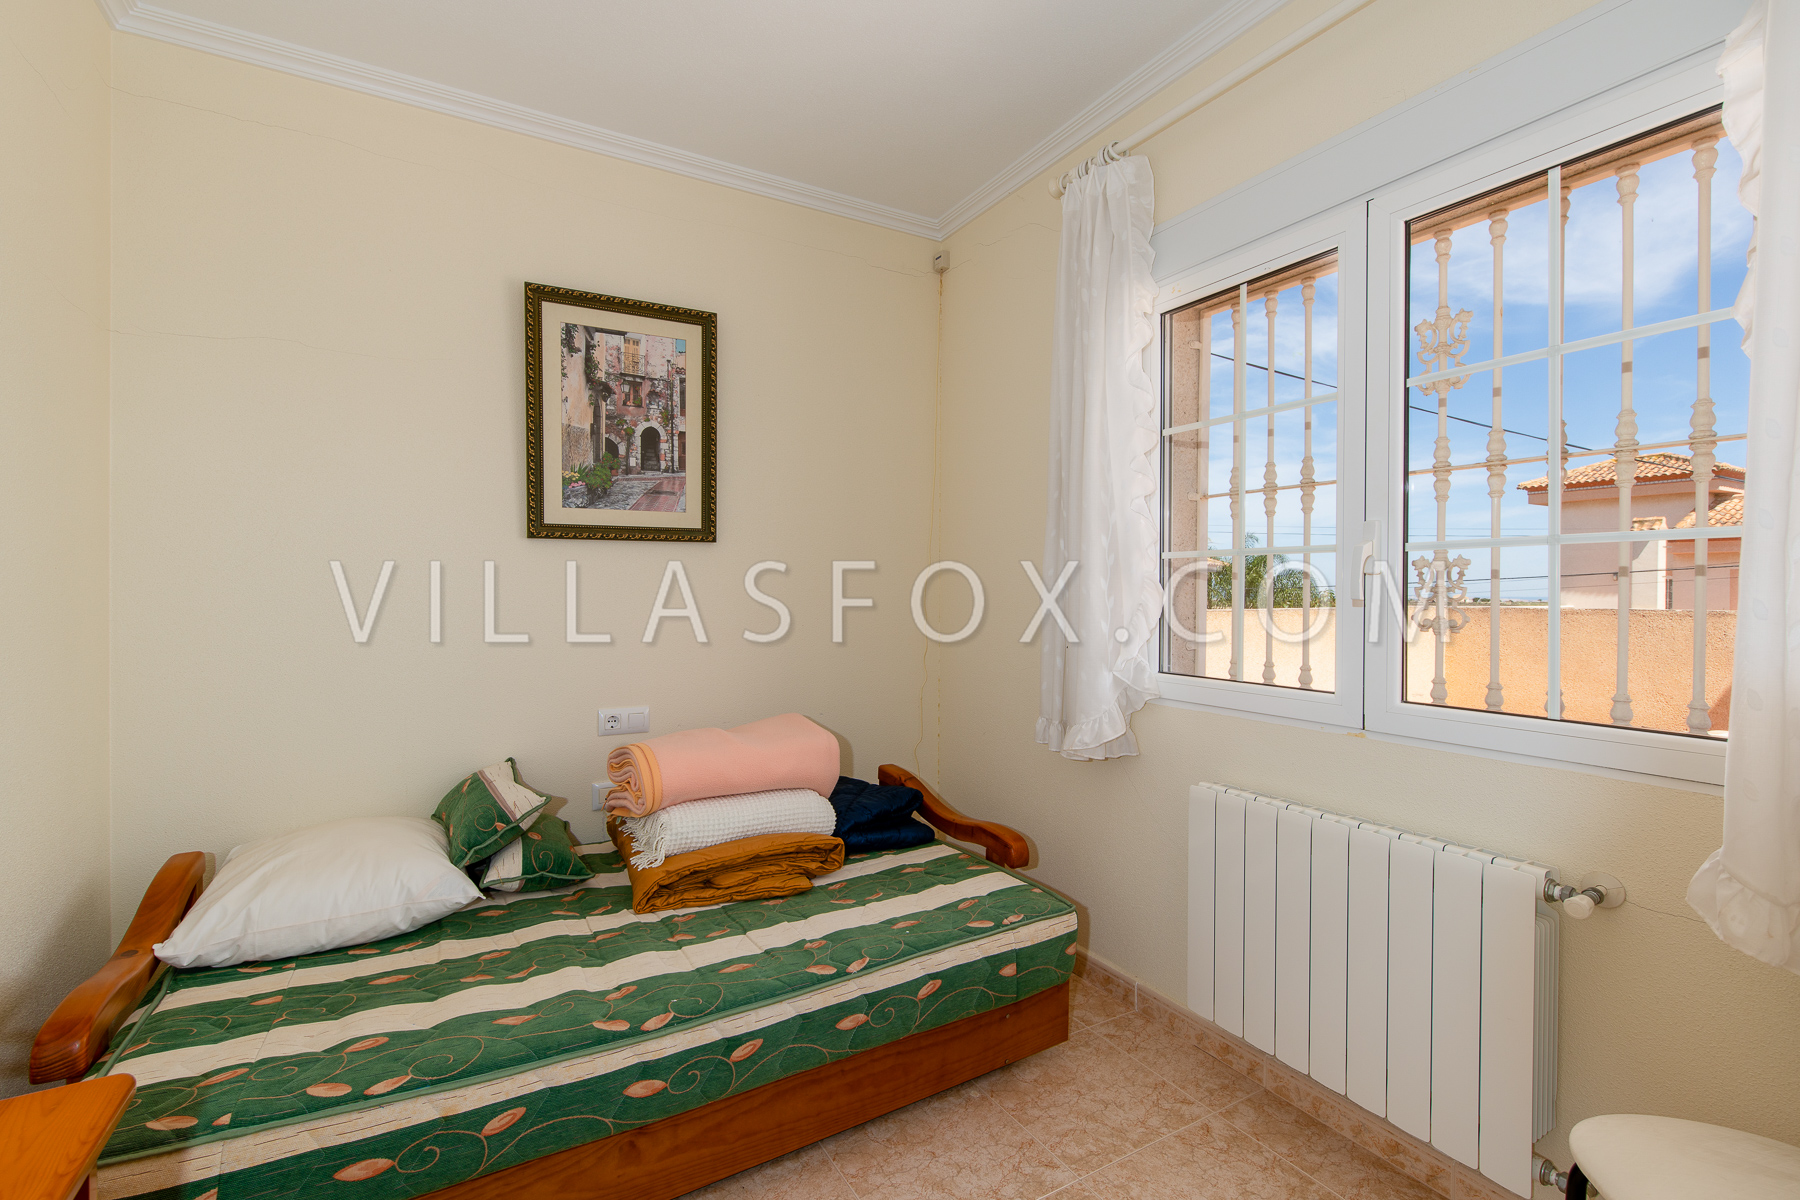 Vendesi villa Torrestrella Las Comunicaciones San Miguel de Salinas Villas Fox-52%